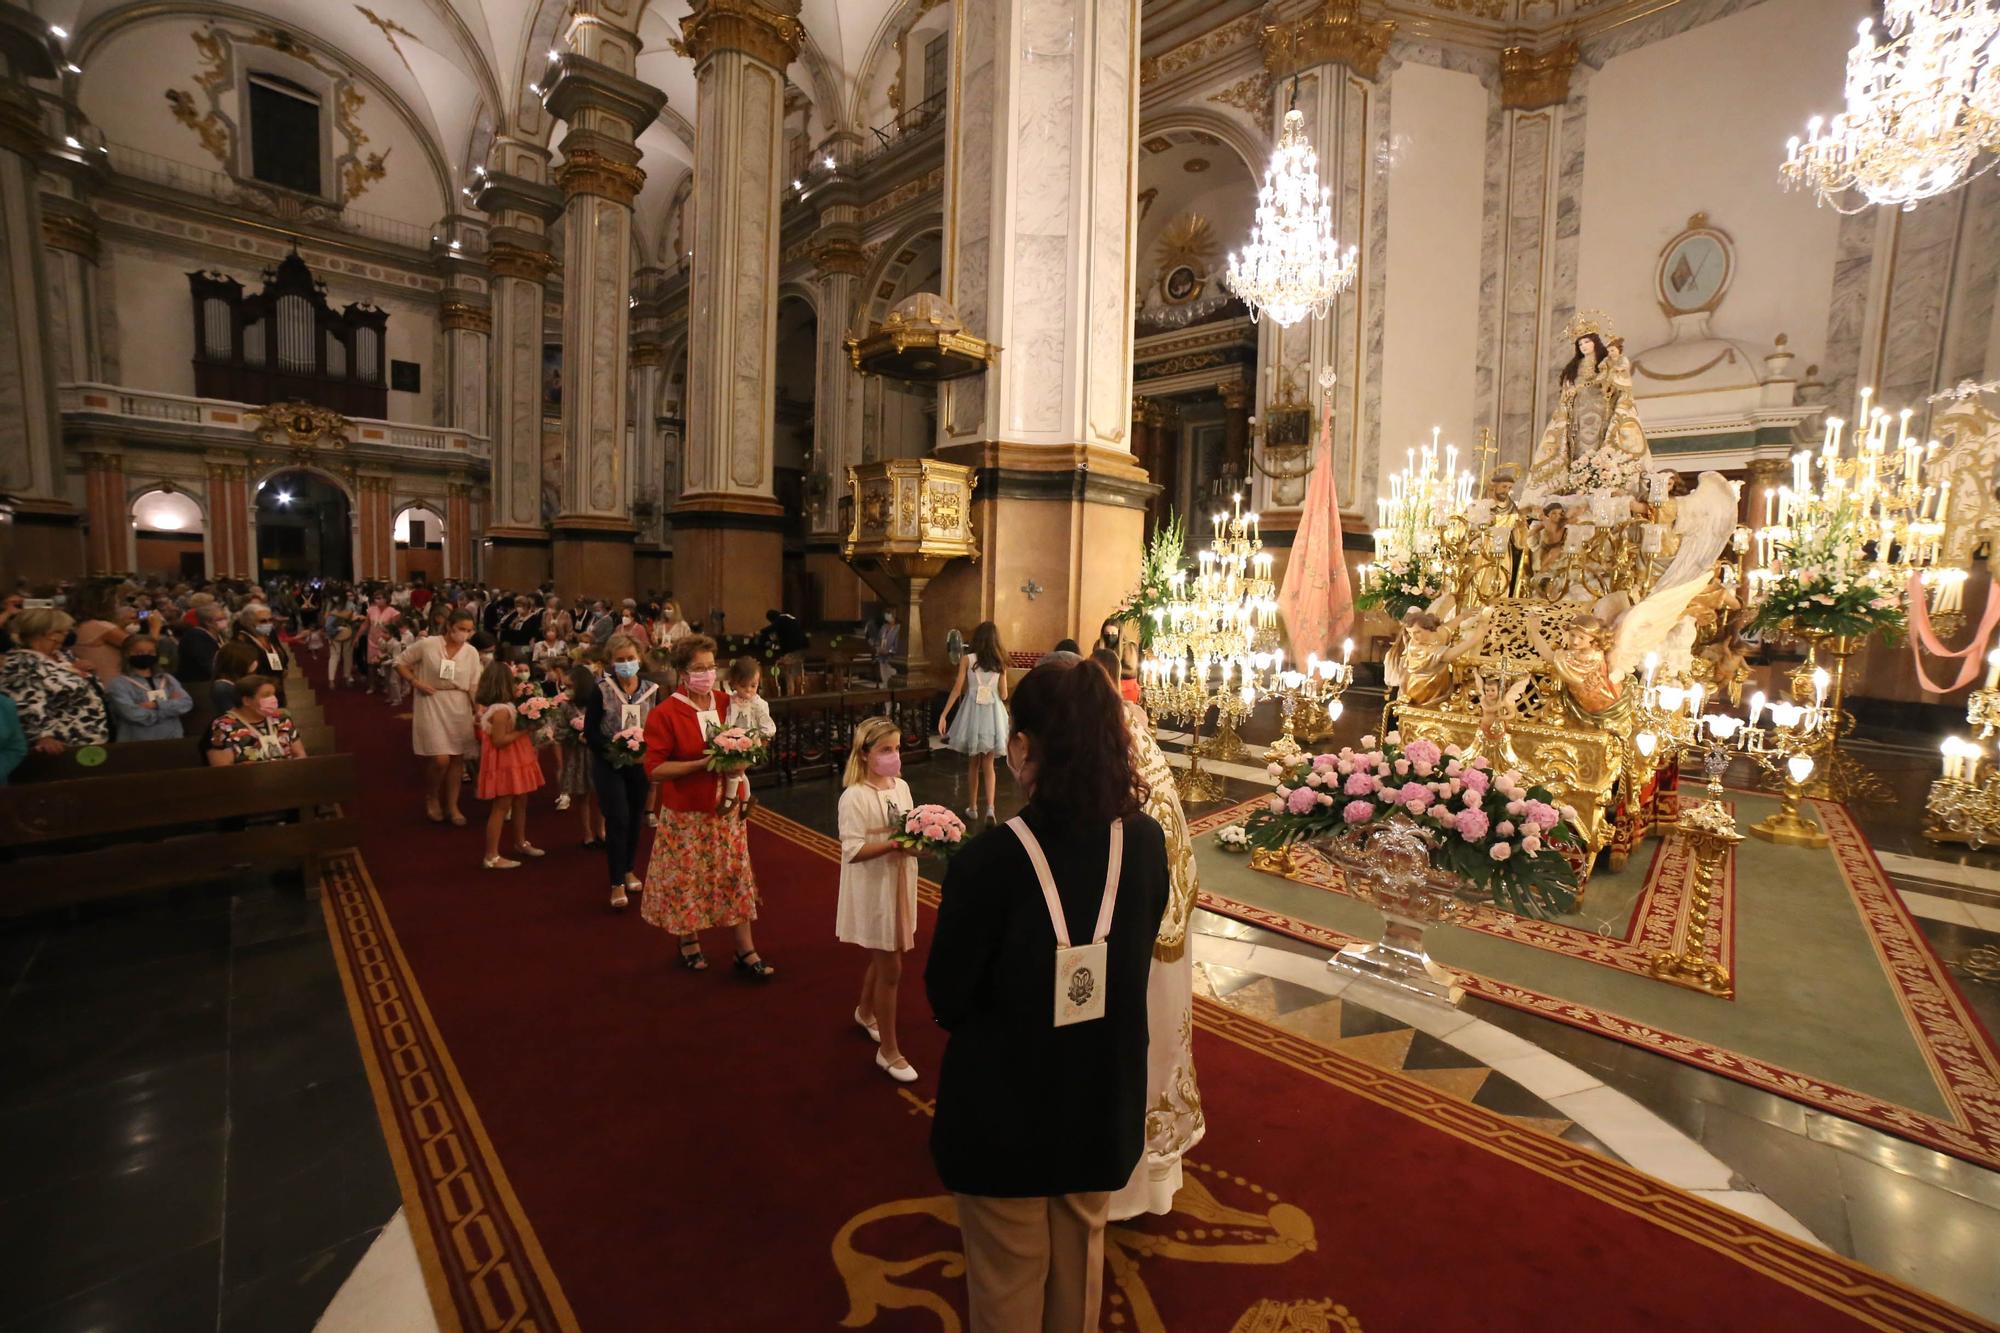 La ofrenda de las rosarieras a la Virgen, en imágenes